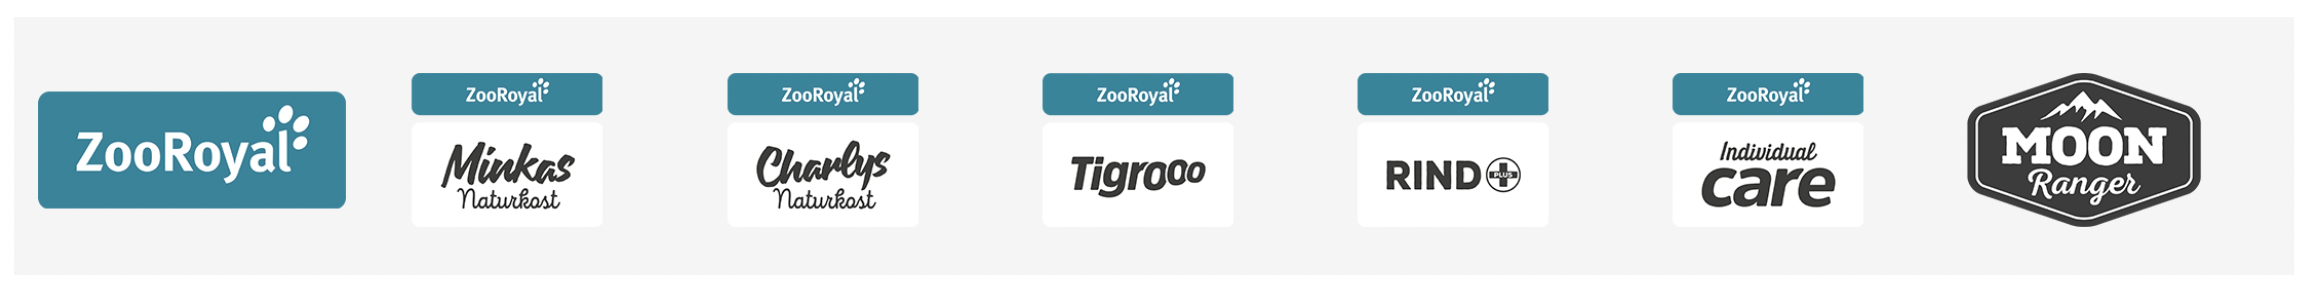 zooroyal onlineshop eigenmarken